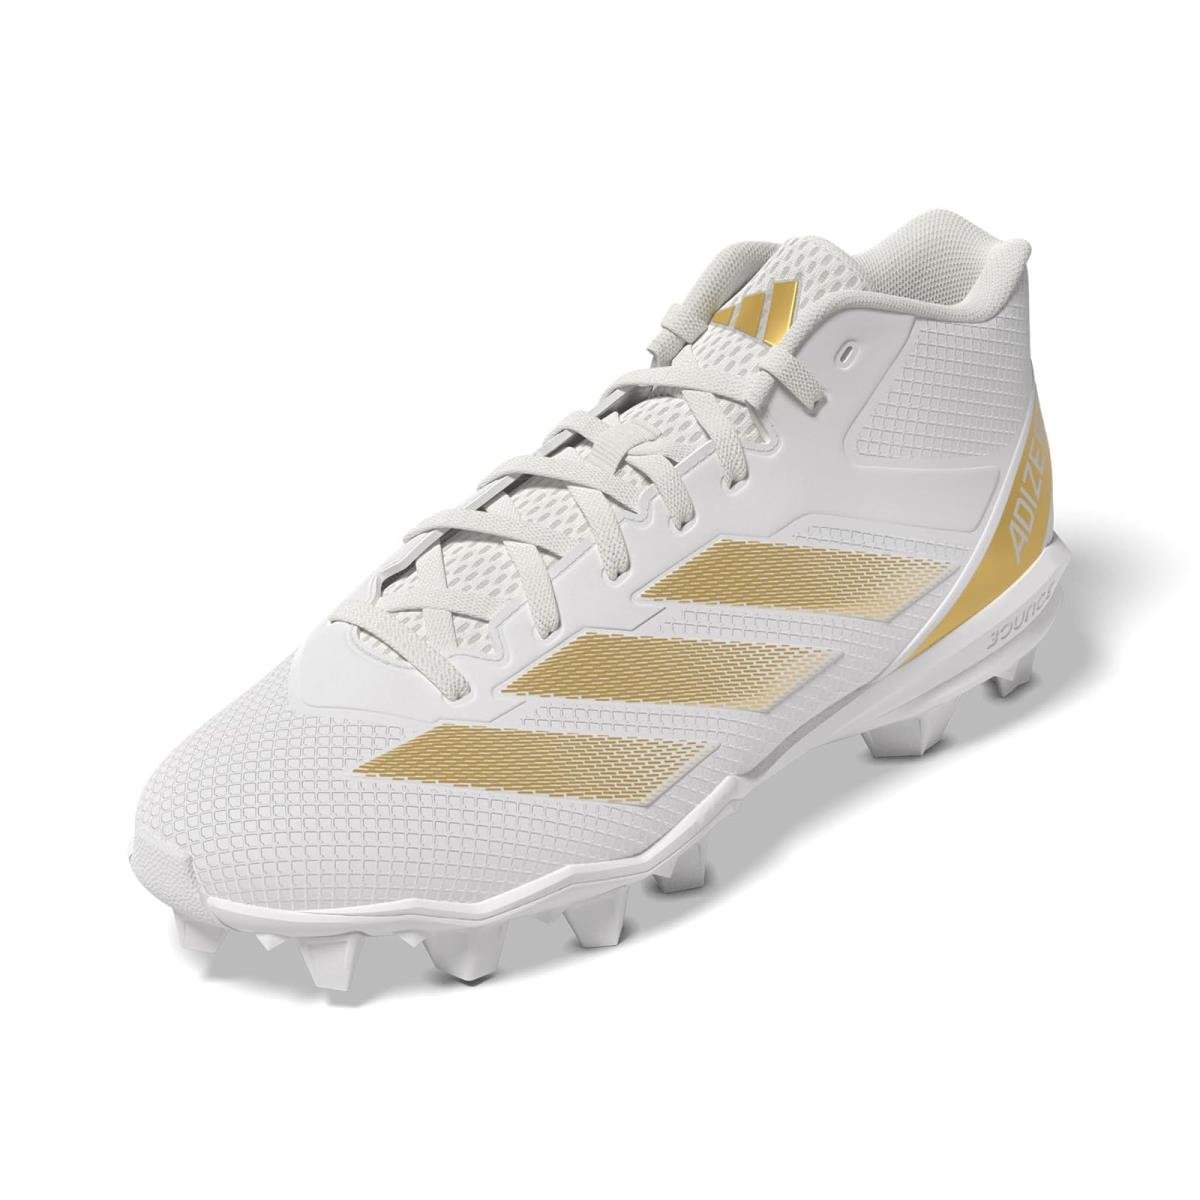 Man`s Sneakers Athletic Shoes Adidas Adizero Impact Spark Mid White/Gold Metallic/White